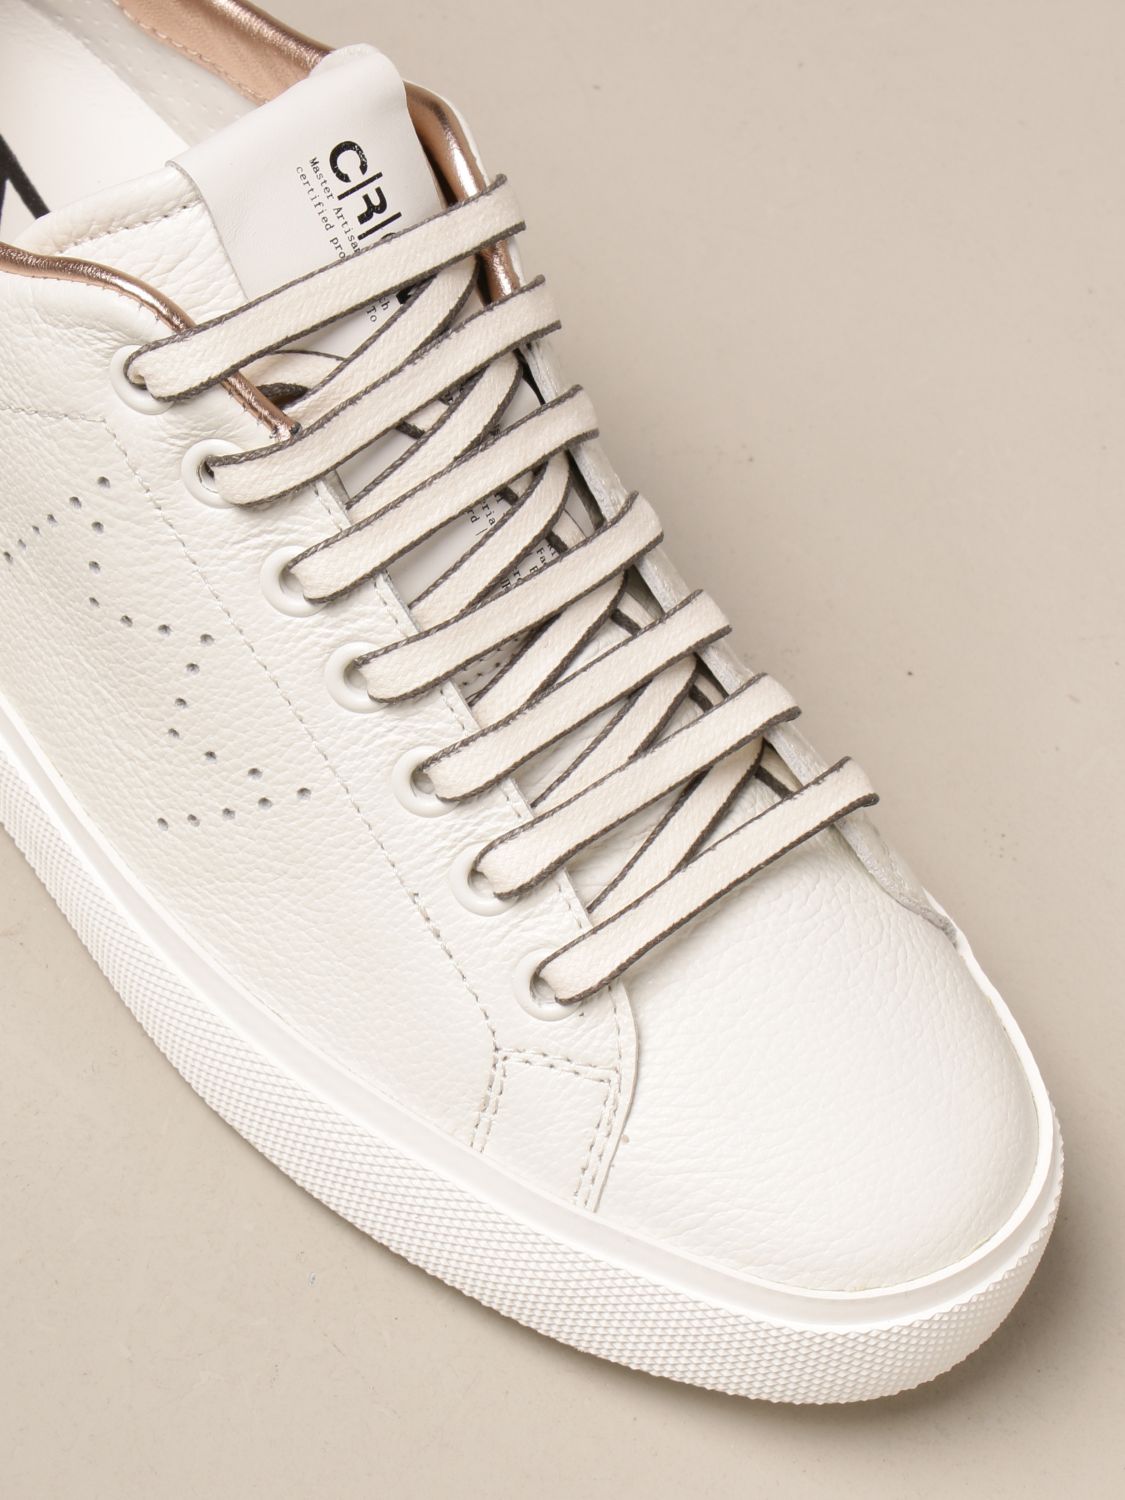 Leather Crown Shoe model sneaker tied WLC178-1-NERO/CAVALLINO - Bemymood